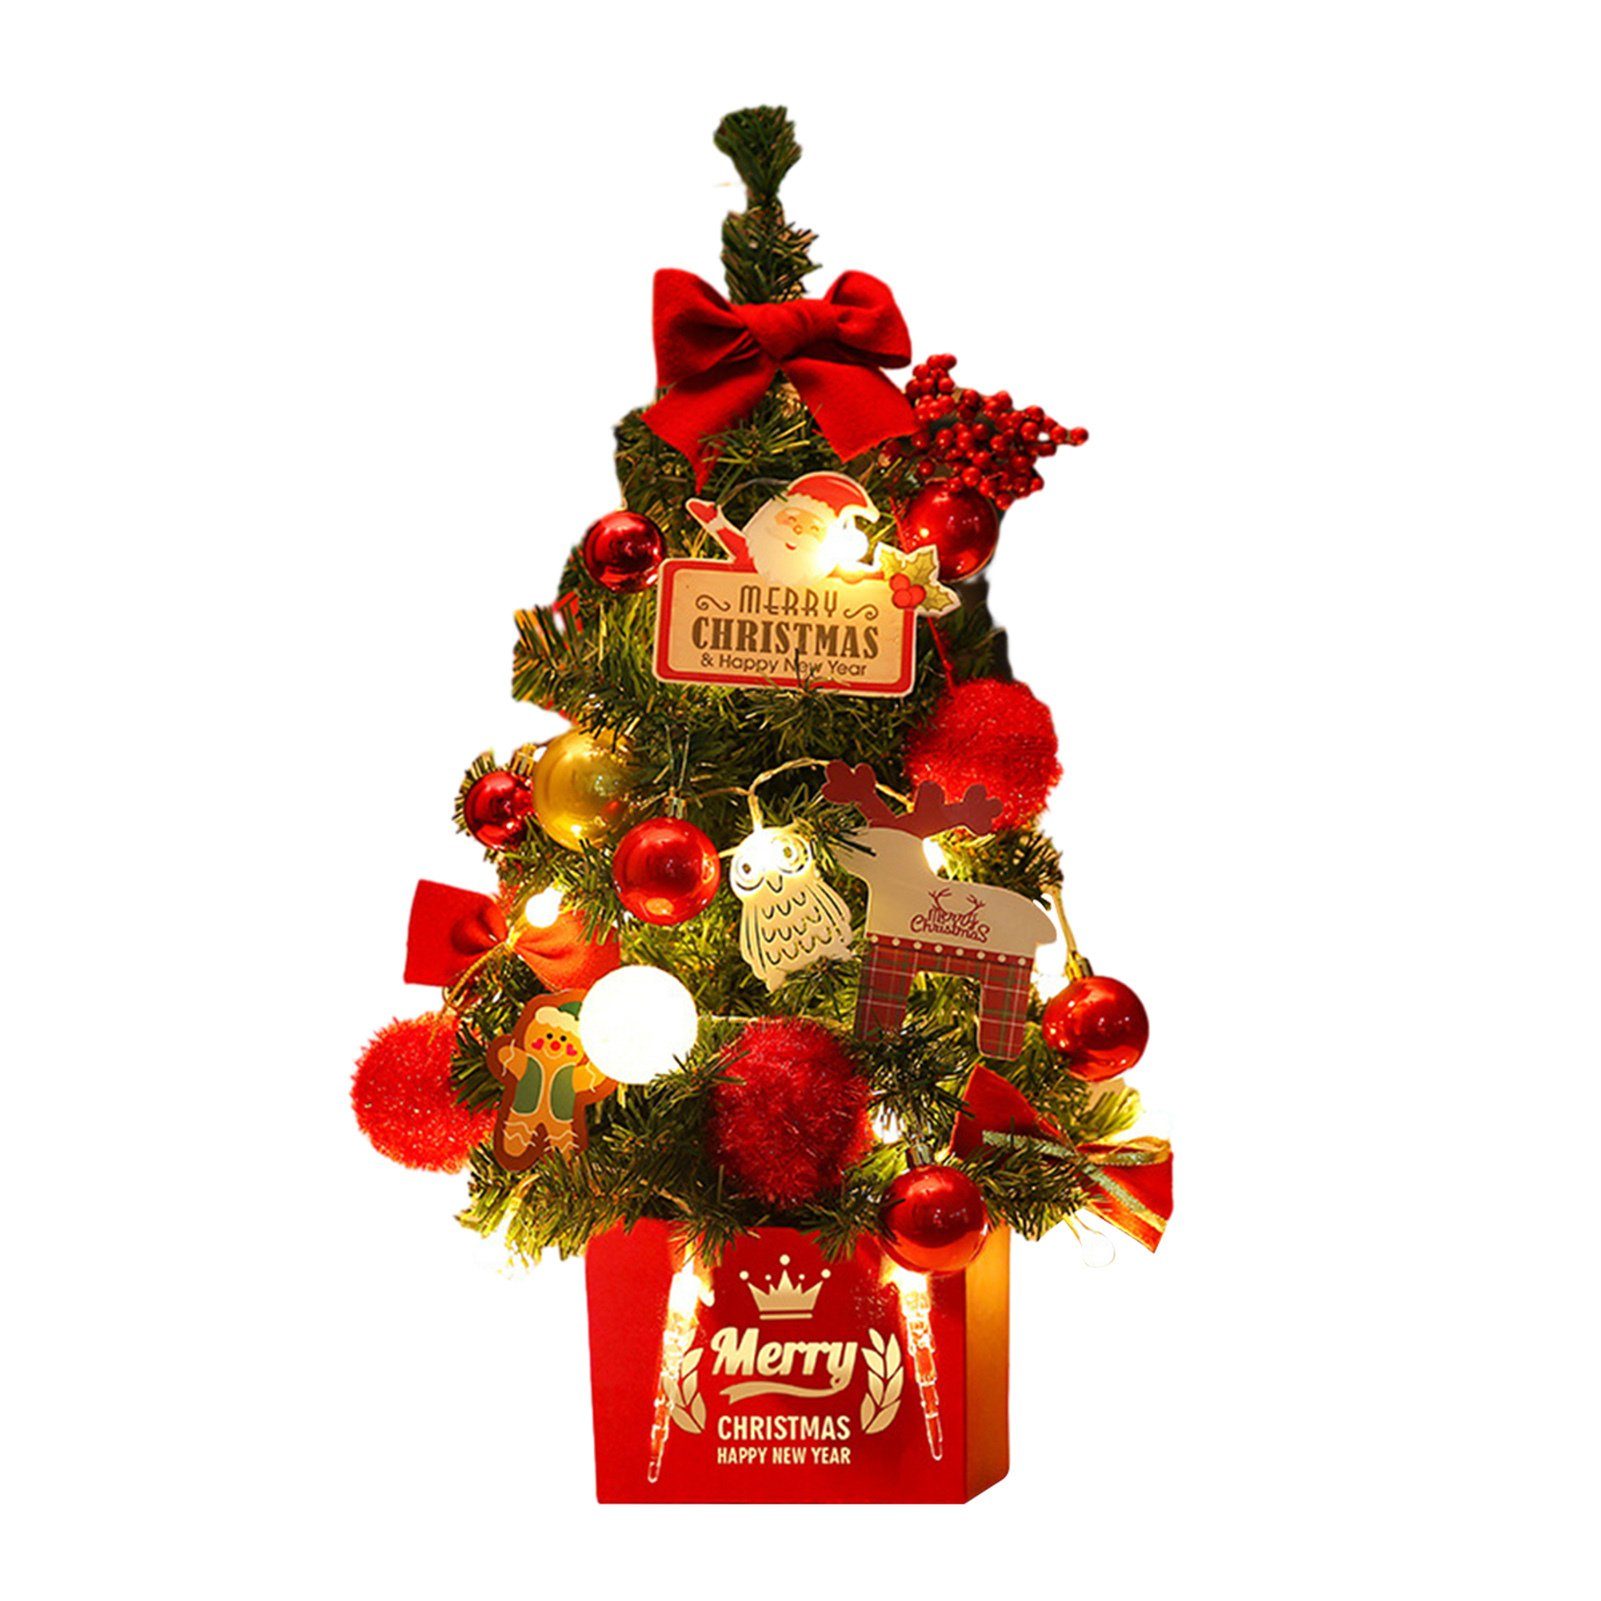 Blusmart Künstlicher Weihnachtsbaum 45 Cm Schöner Desktop-Weihnachtsbaum Mit Rot-goldenem Dekor, Mini-Weihnachtsbaum red